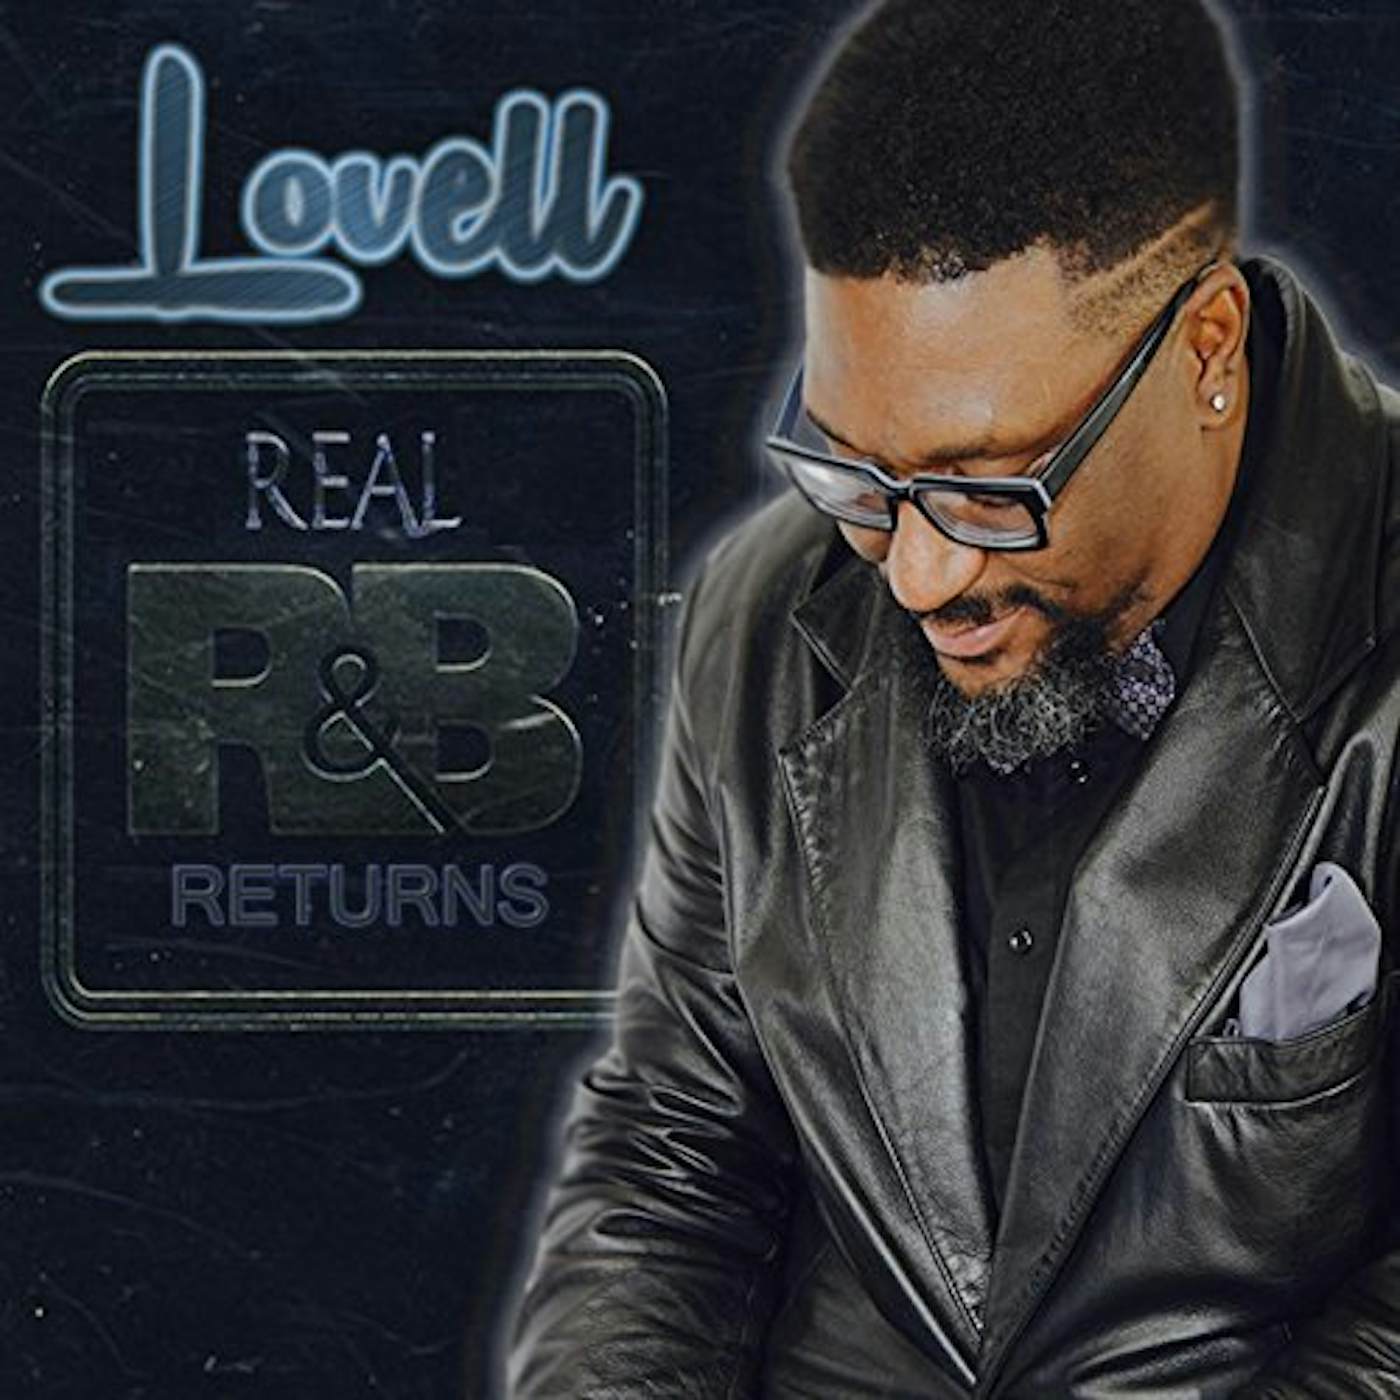 Lovell REAL R&B RETURNS CD